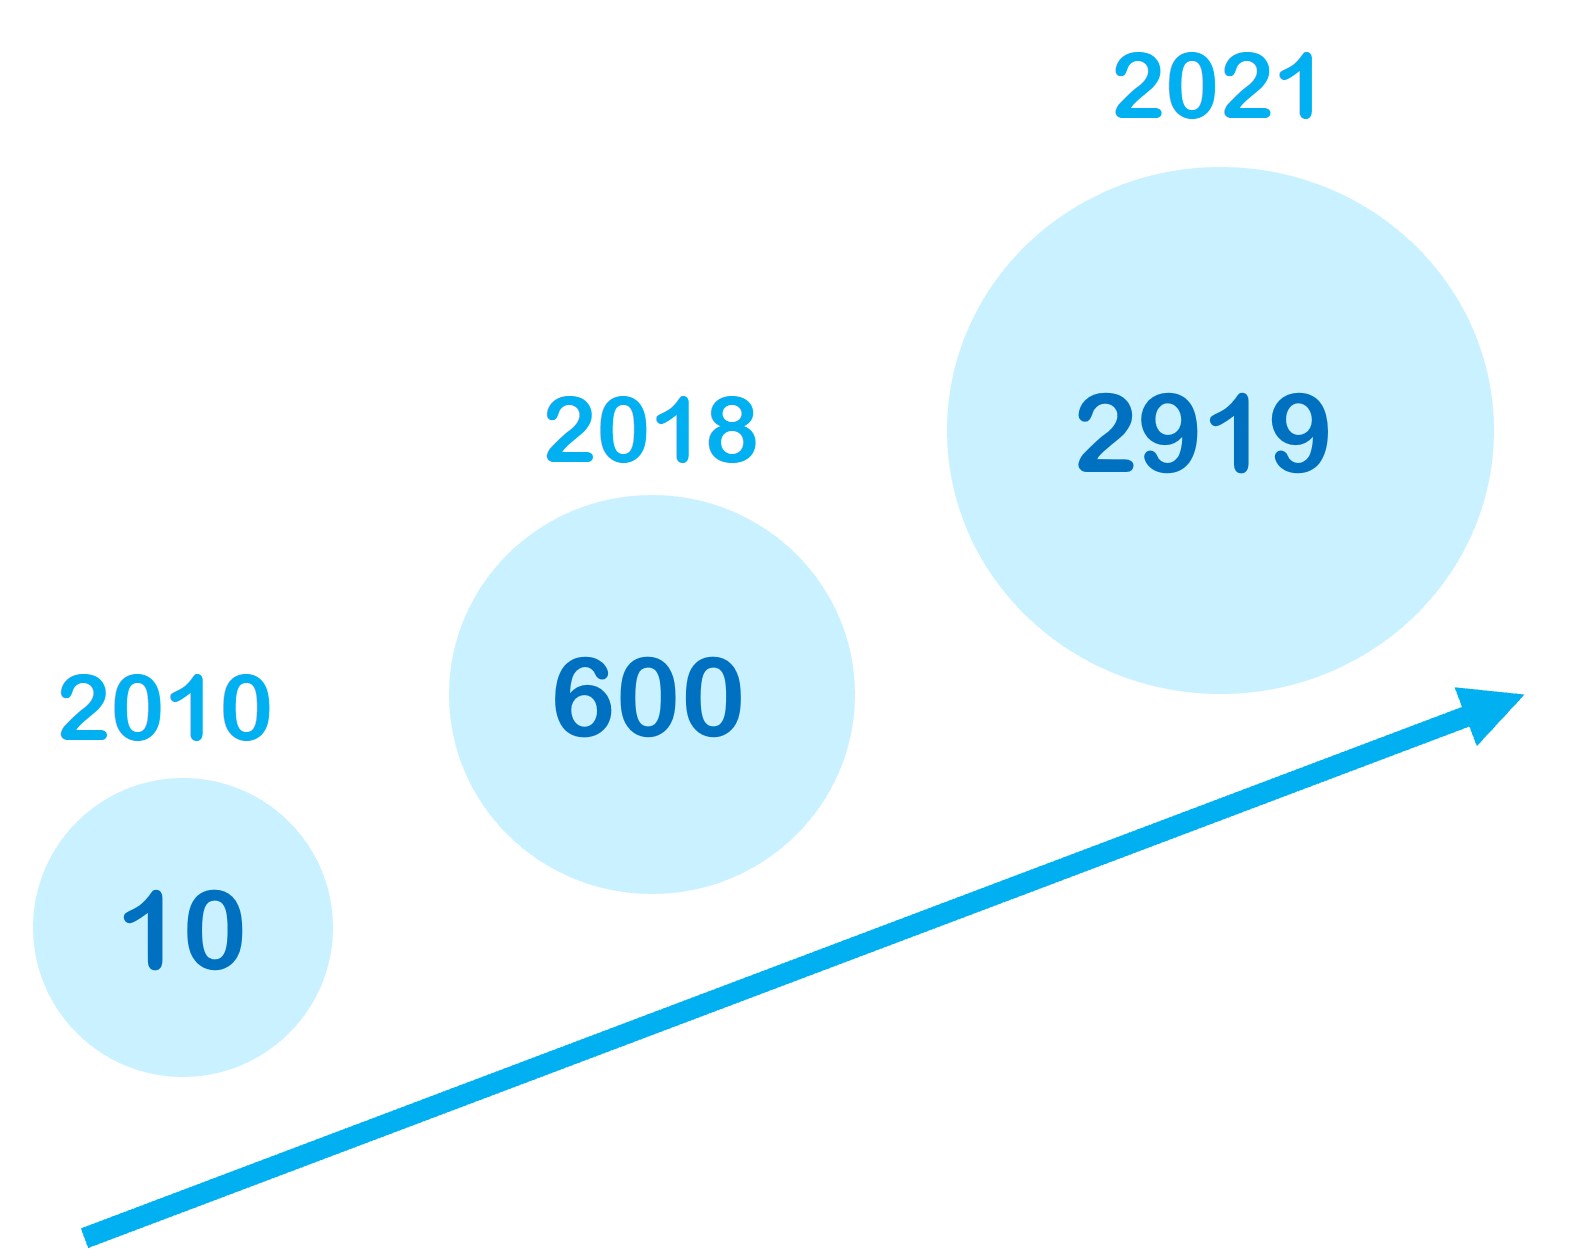 Entwicklung der wissenschaftlichen Publikationen zu Mikroplastik in den Jahren 2010, 2018 und 2021 © Wasser 3.0.